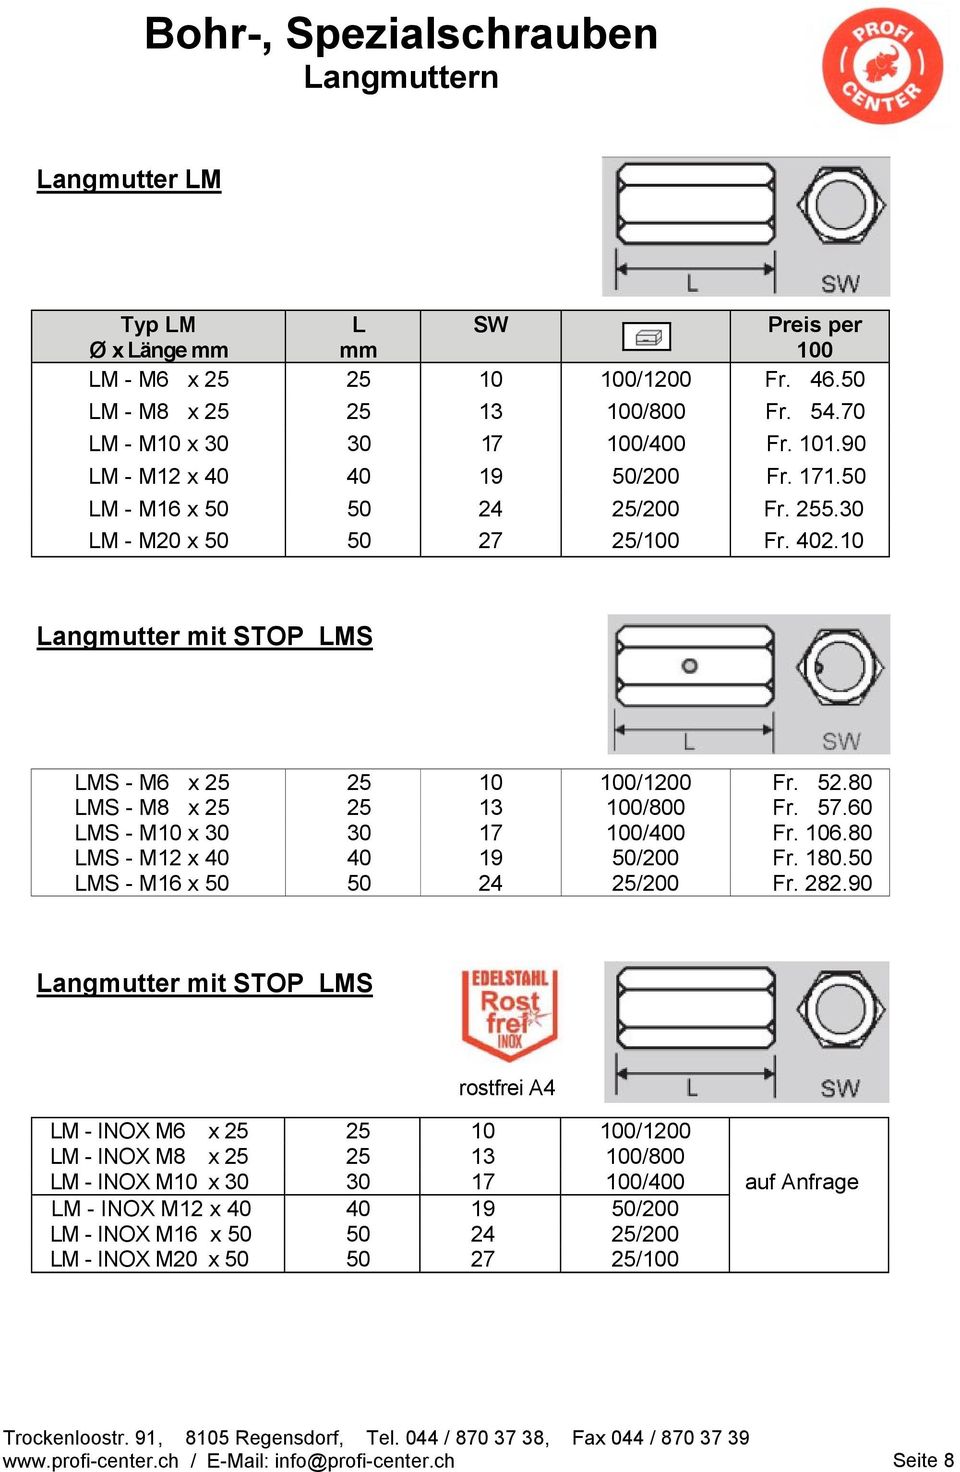 80 LMS - M8 x 25 25 13 100/800 Fr. 57.60 LMS - M10 x 30 30 17 100/400 Fr. 106.80 LMS - M12 x 40 40 19 50/200 Fr. 180.50 LMS - M16 x 50 50 24 25/200 Fr. 282.